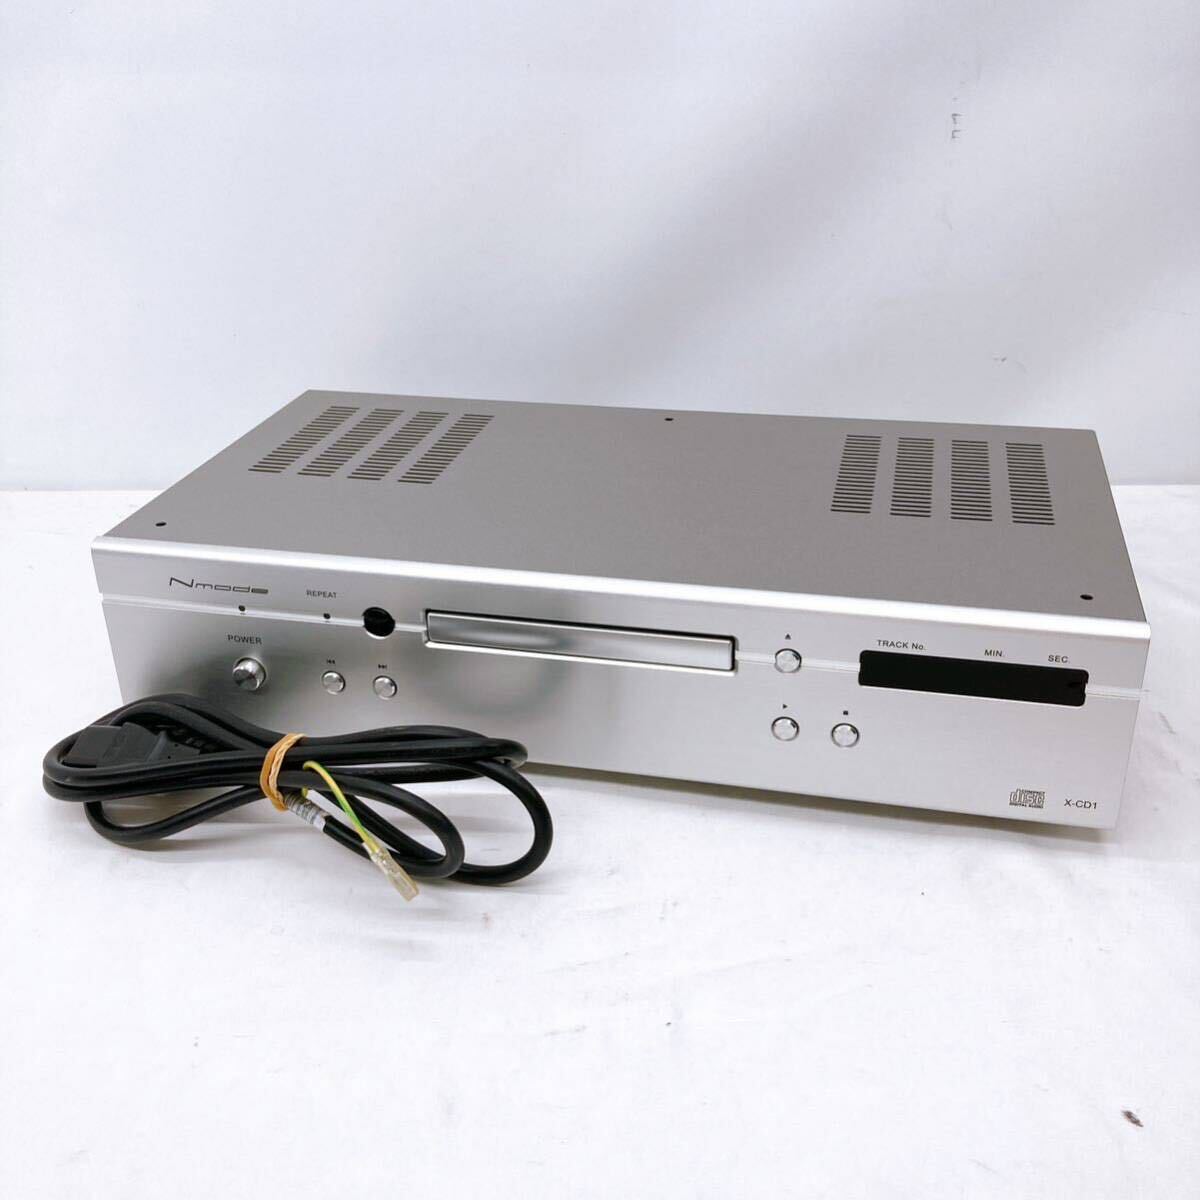 Nmodeen mode CD player X-CD1